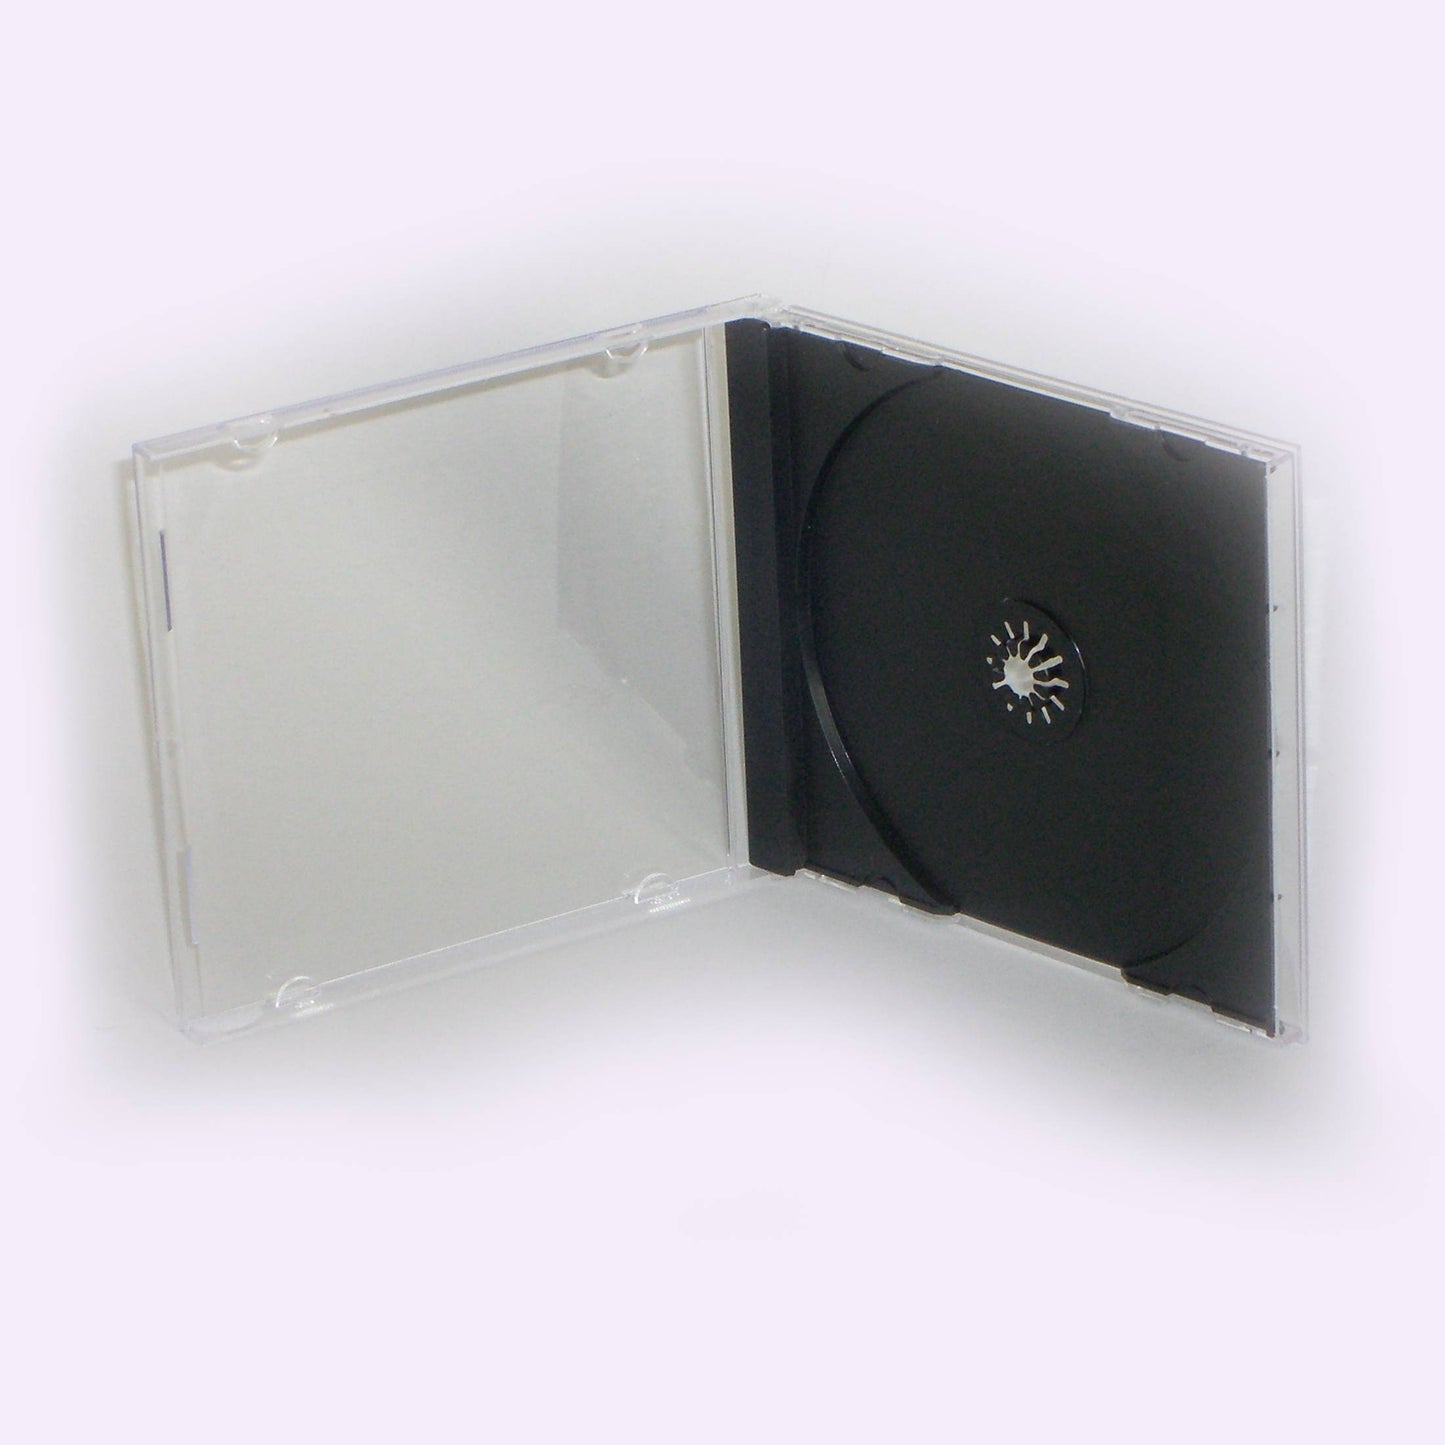 10 Boitiers JEWEL BOX 1 CD centreur noir